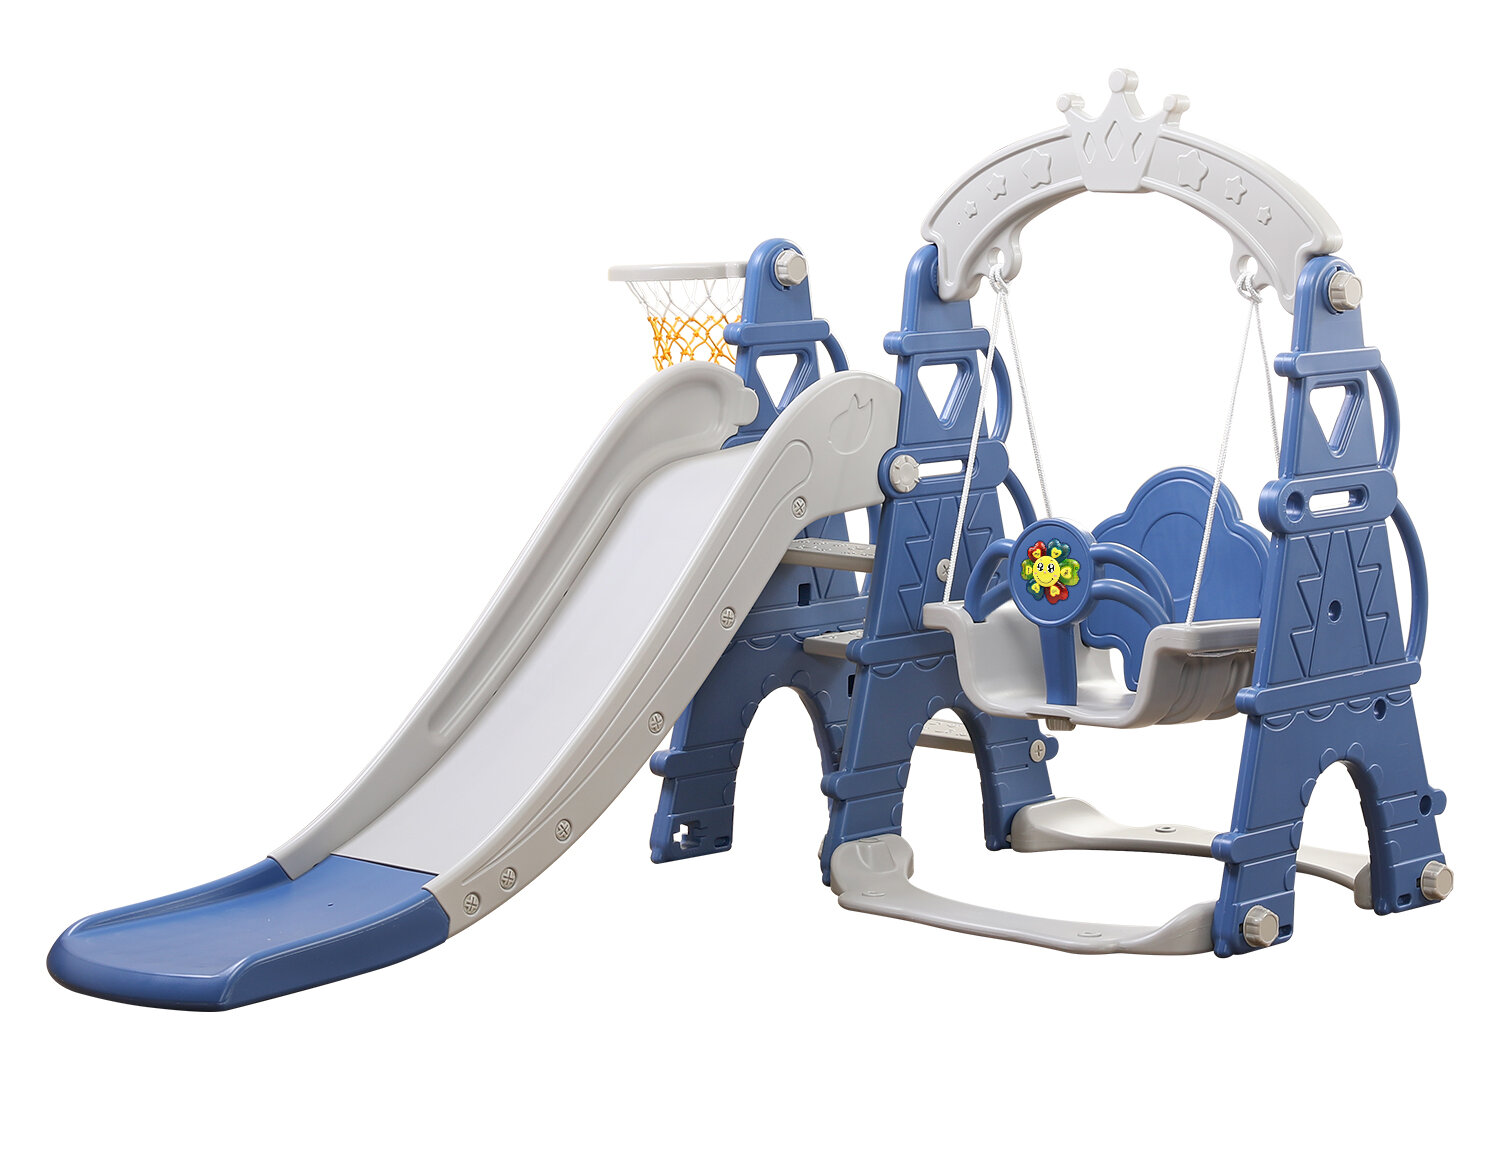 infant swing and slide set